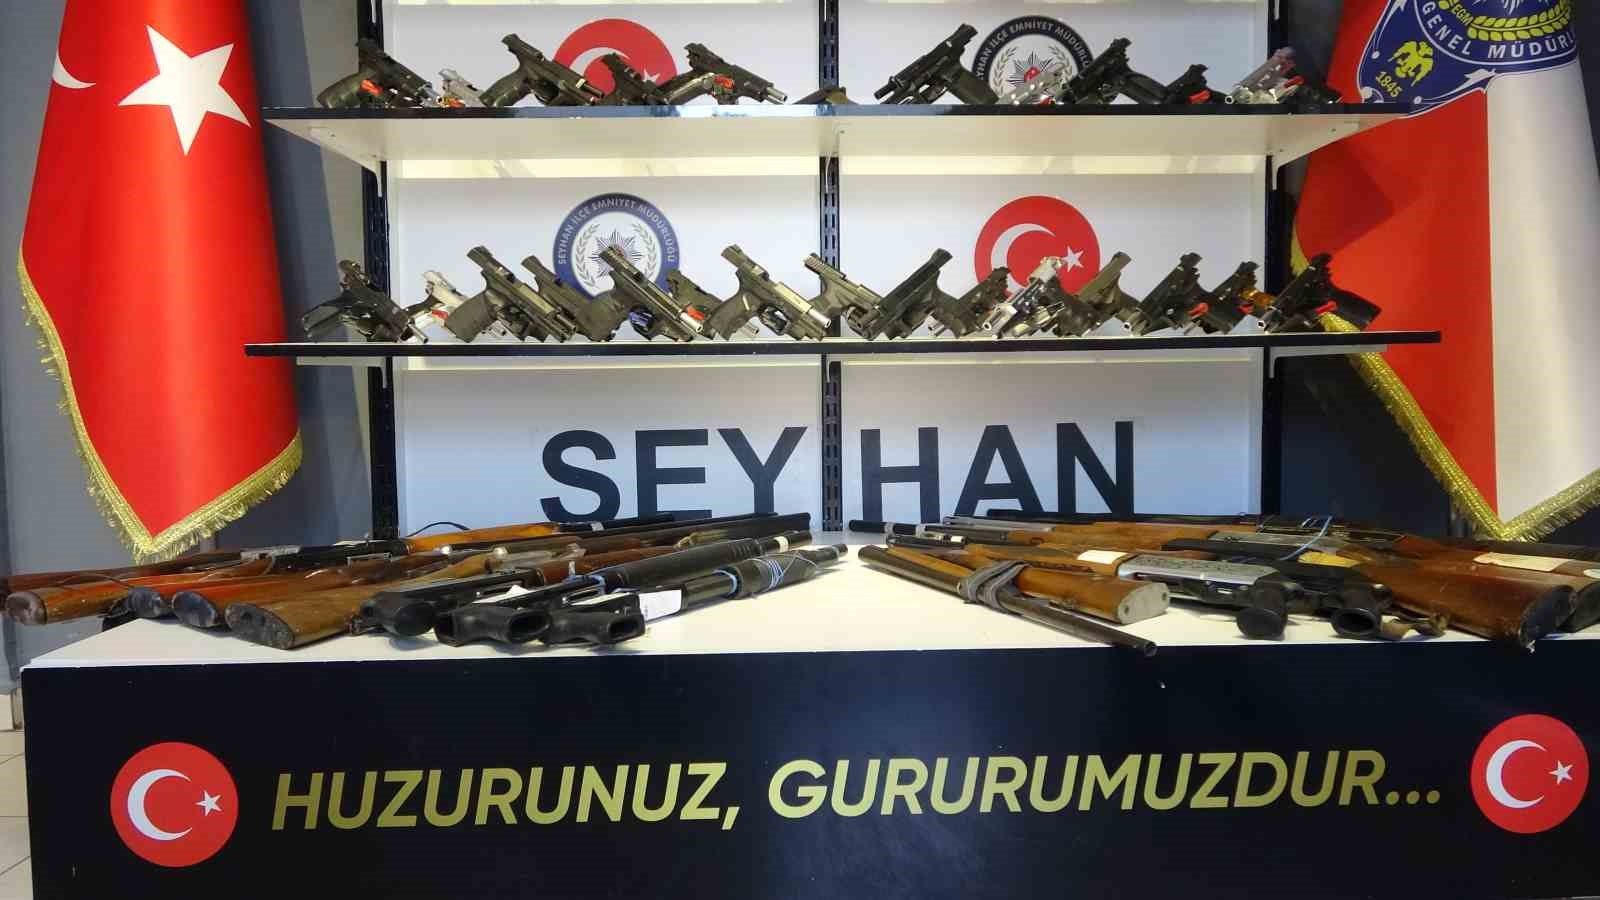 Seyhan polisi 54 silah ele geçirirken 314 suçluyu yakaladı
